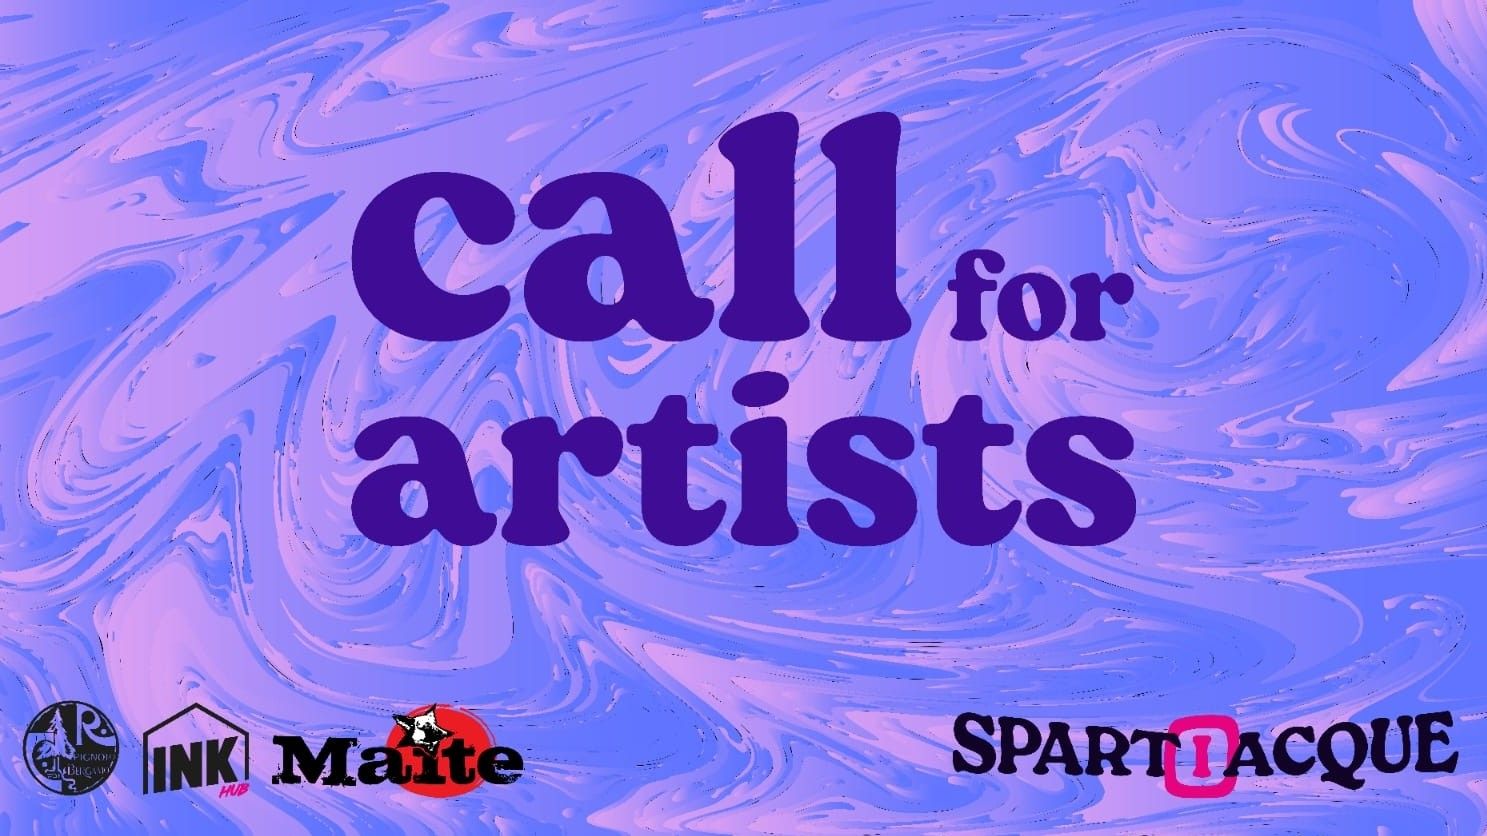 Spartiacque - Call For Artists